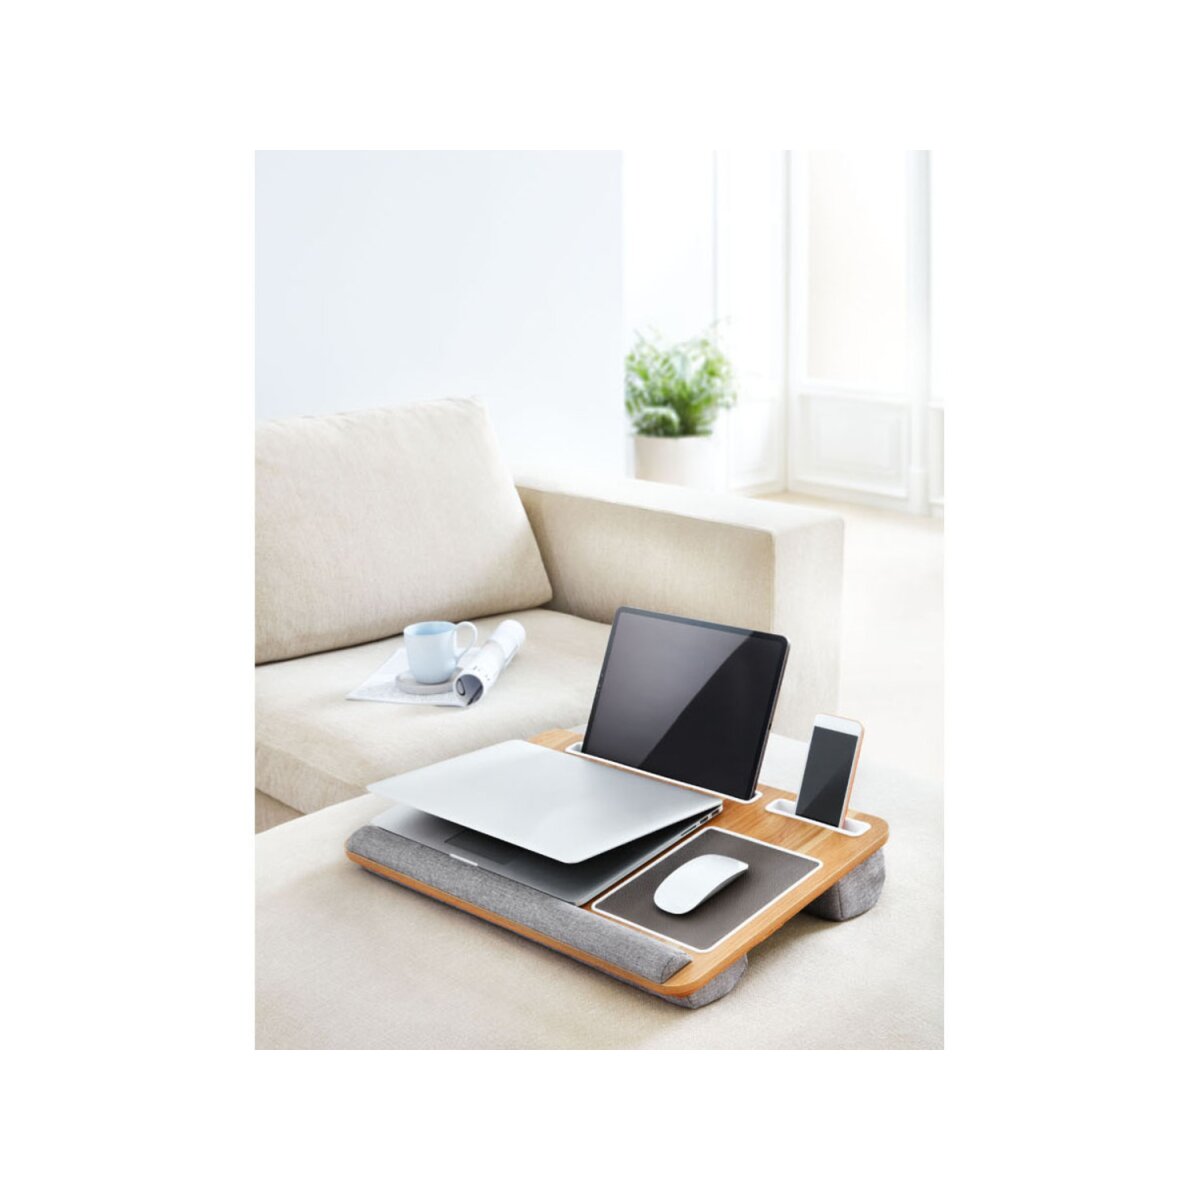 LIVARNO home Laptopunterlage, komfortabel gepolstert - B-Ware neuwertig,  16,99 €